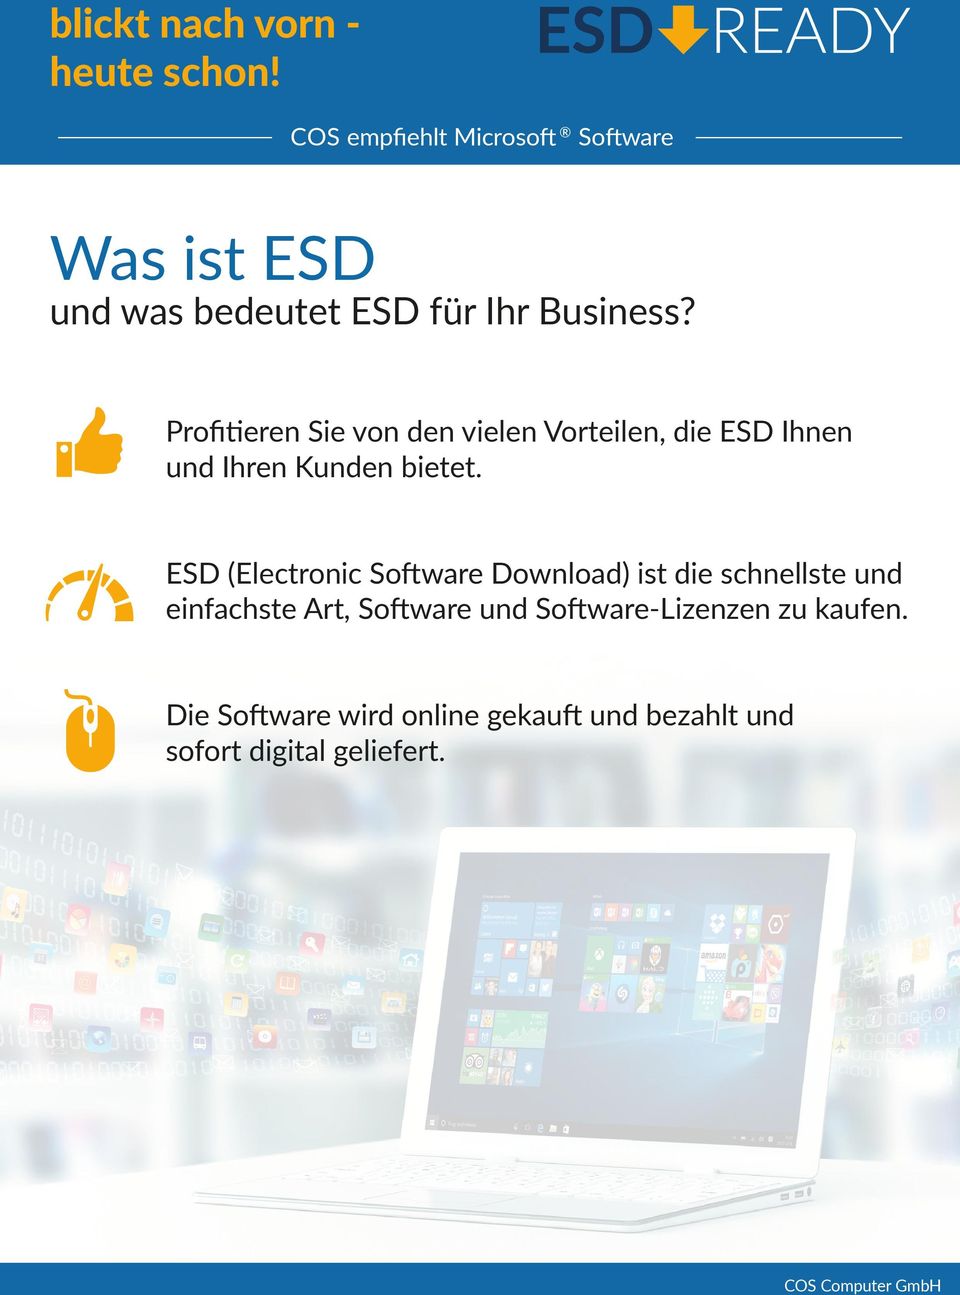 ESD (Electronic Software Download) ist die schnellste und einfachste Art, Software und